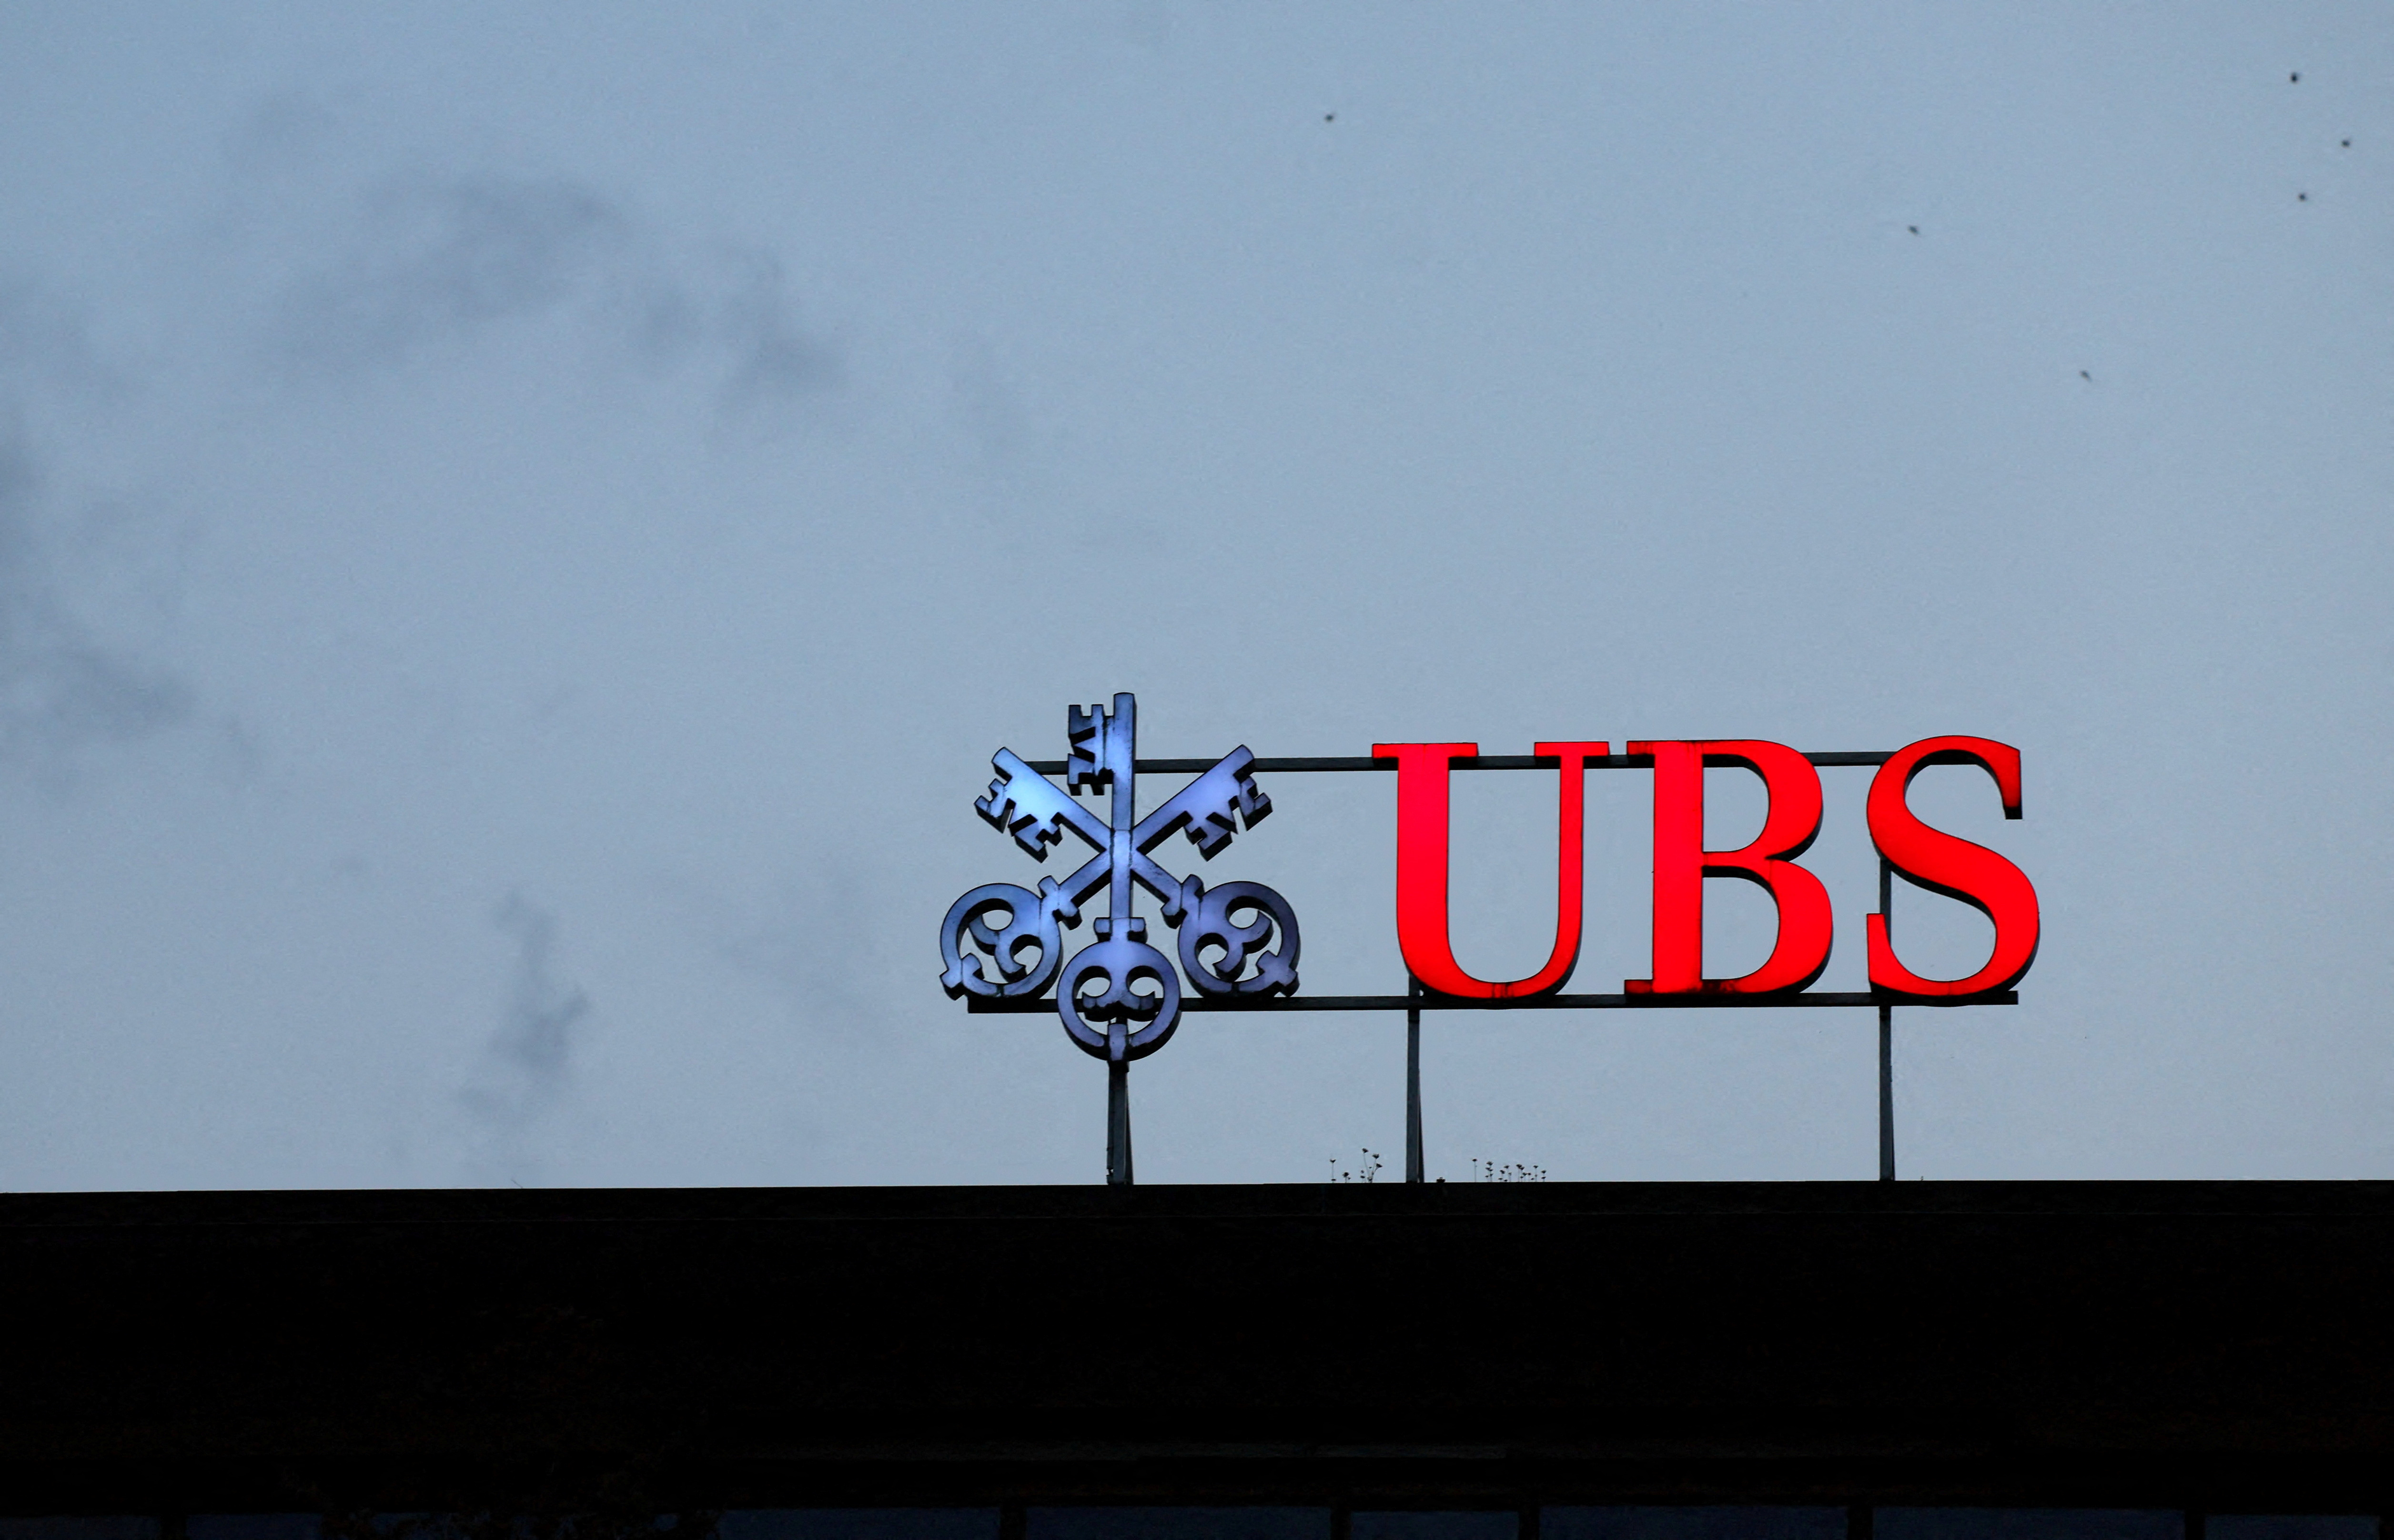 Una iniciativa ciudadana busca nacionalizar parcialmente UBS, el mayor banco suizo